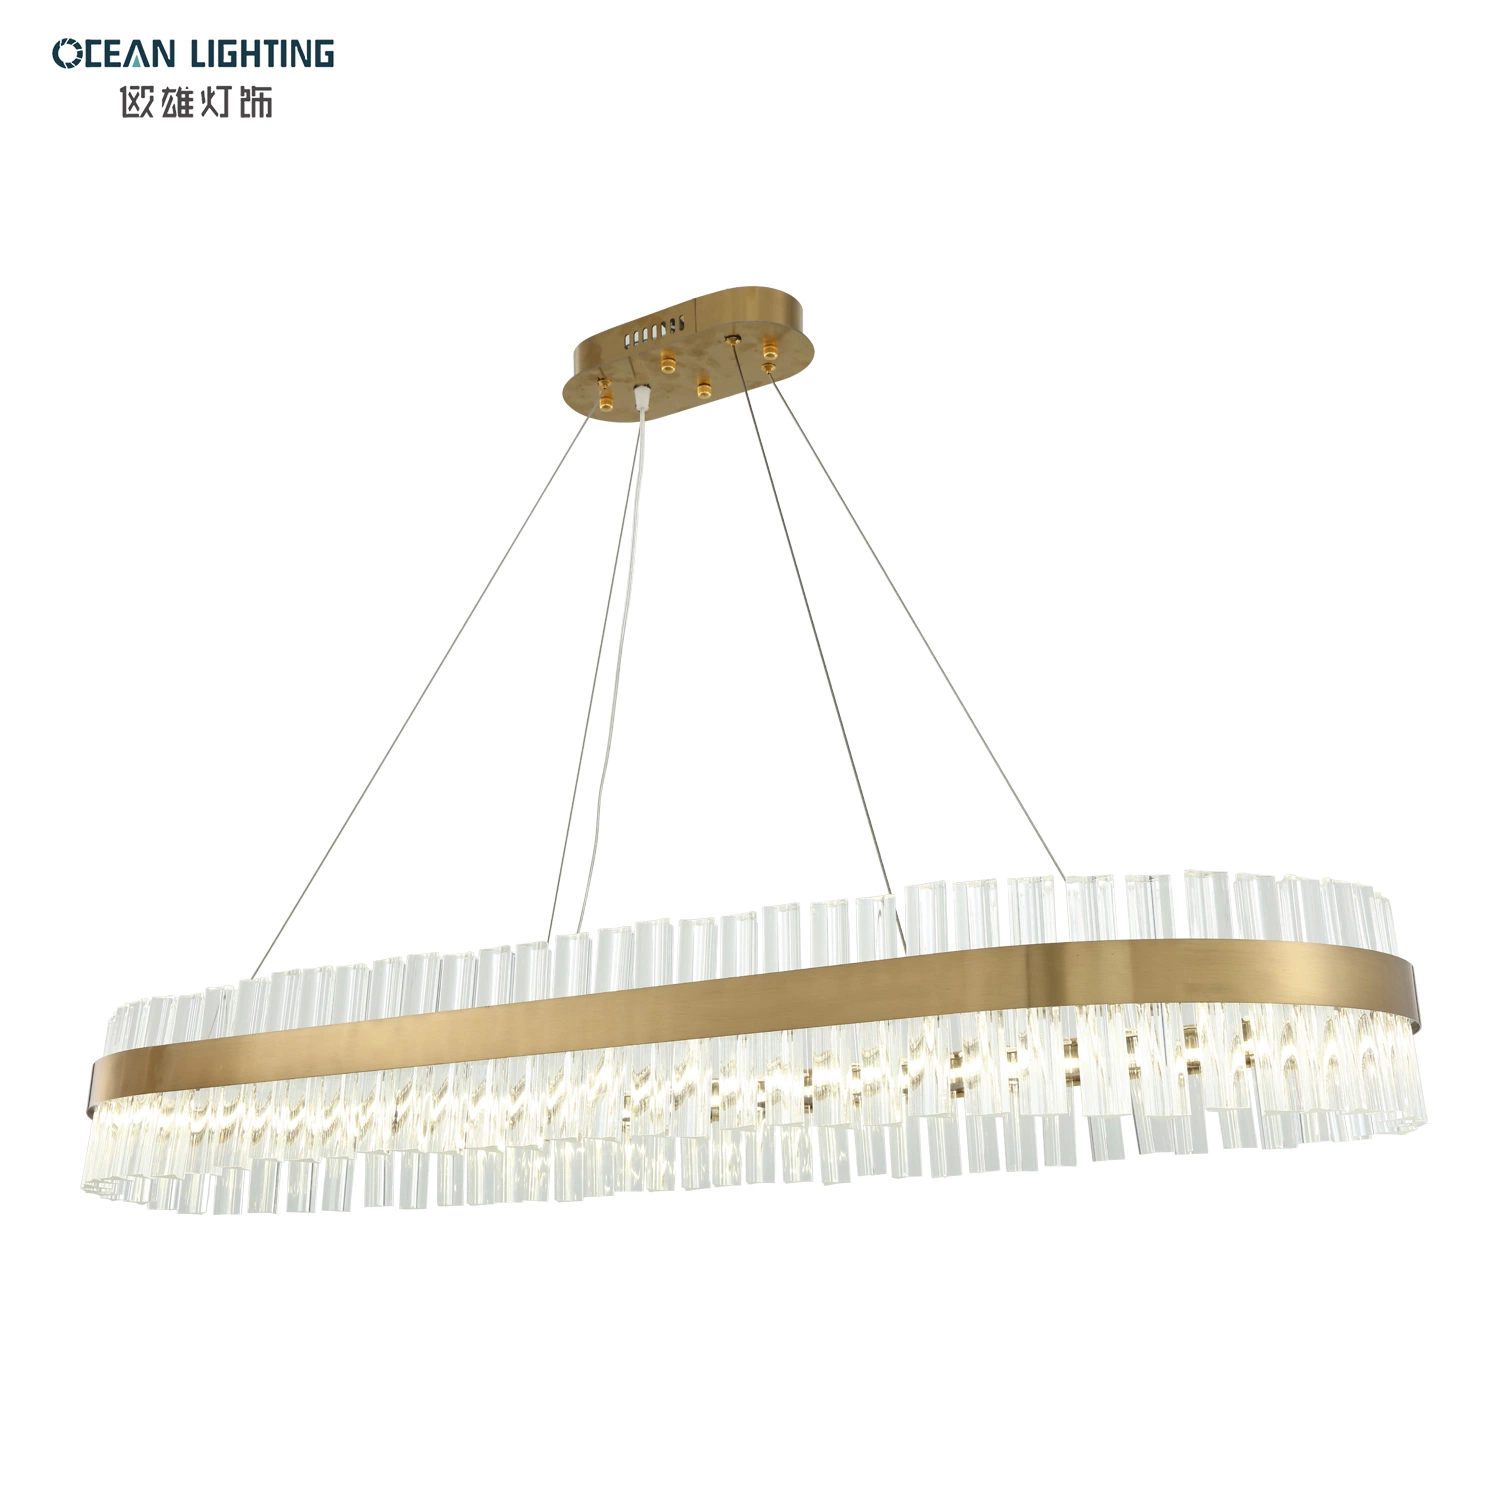 Океан освещение роскошь для использования внутри помещений, подвесной светодиодный индикатор K9 Подвесной светильник Crystal